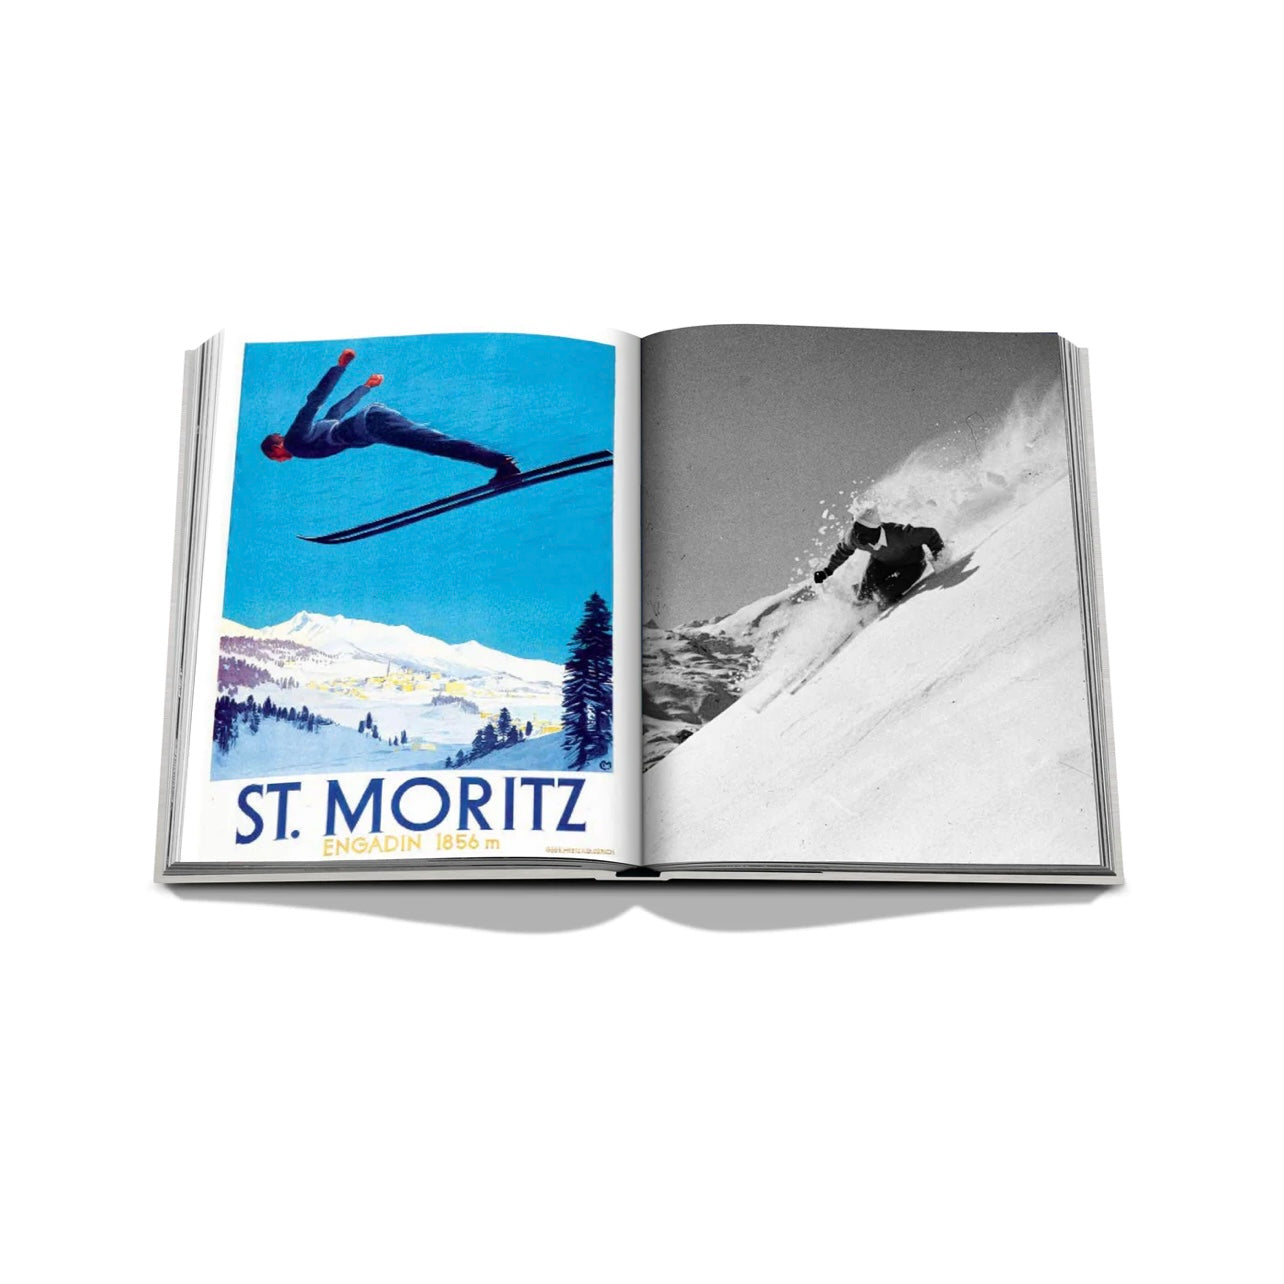 St. Moritz Chic - Hardcover